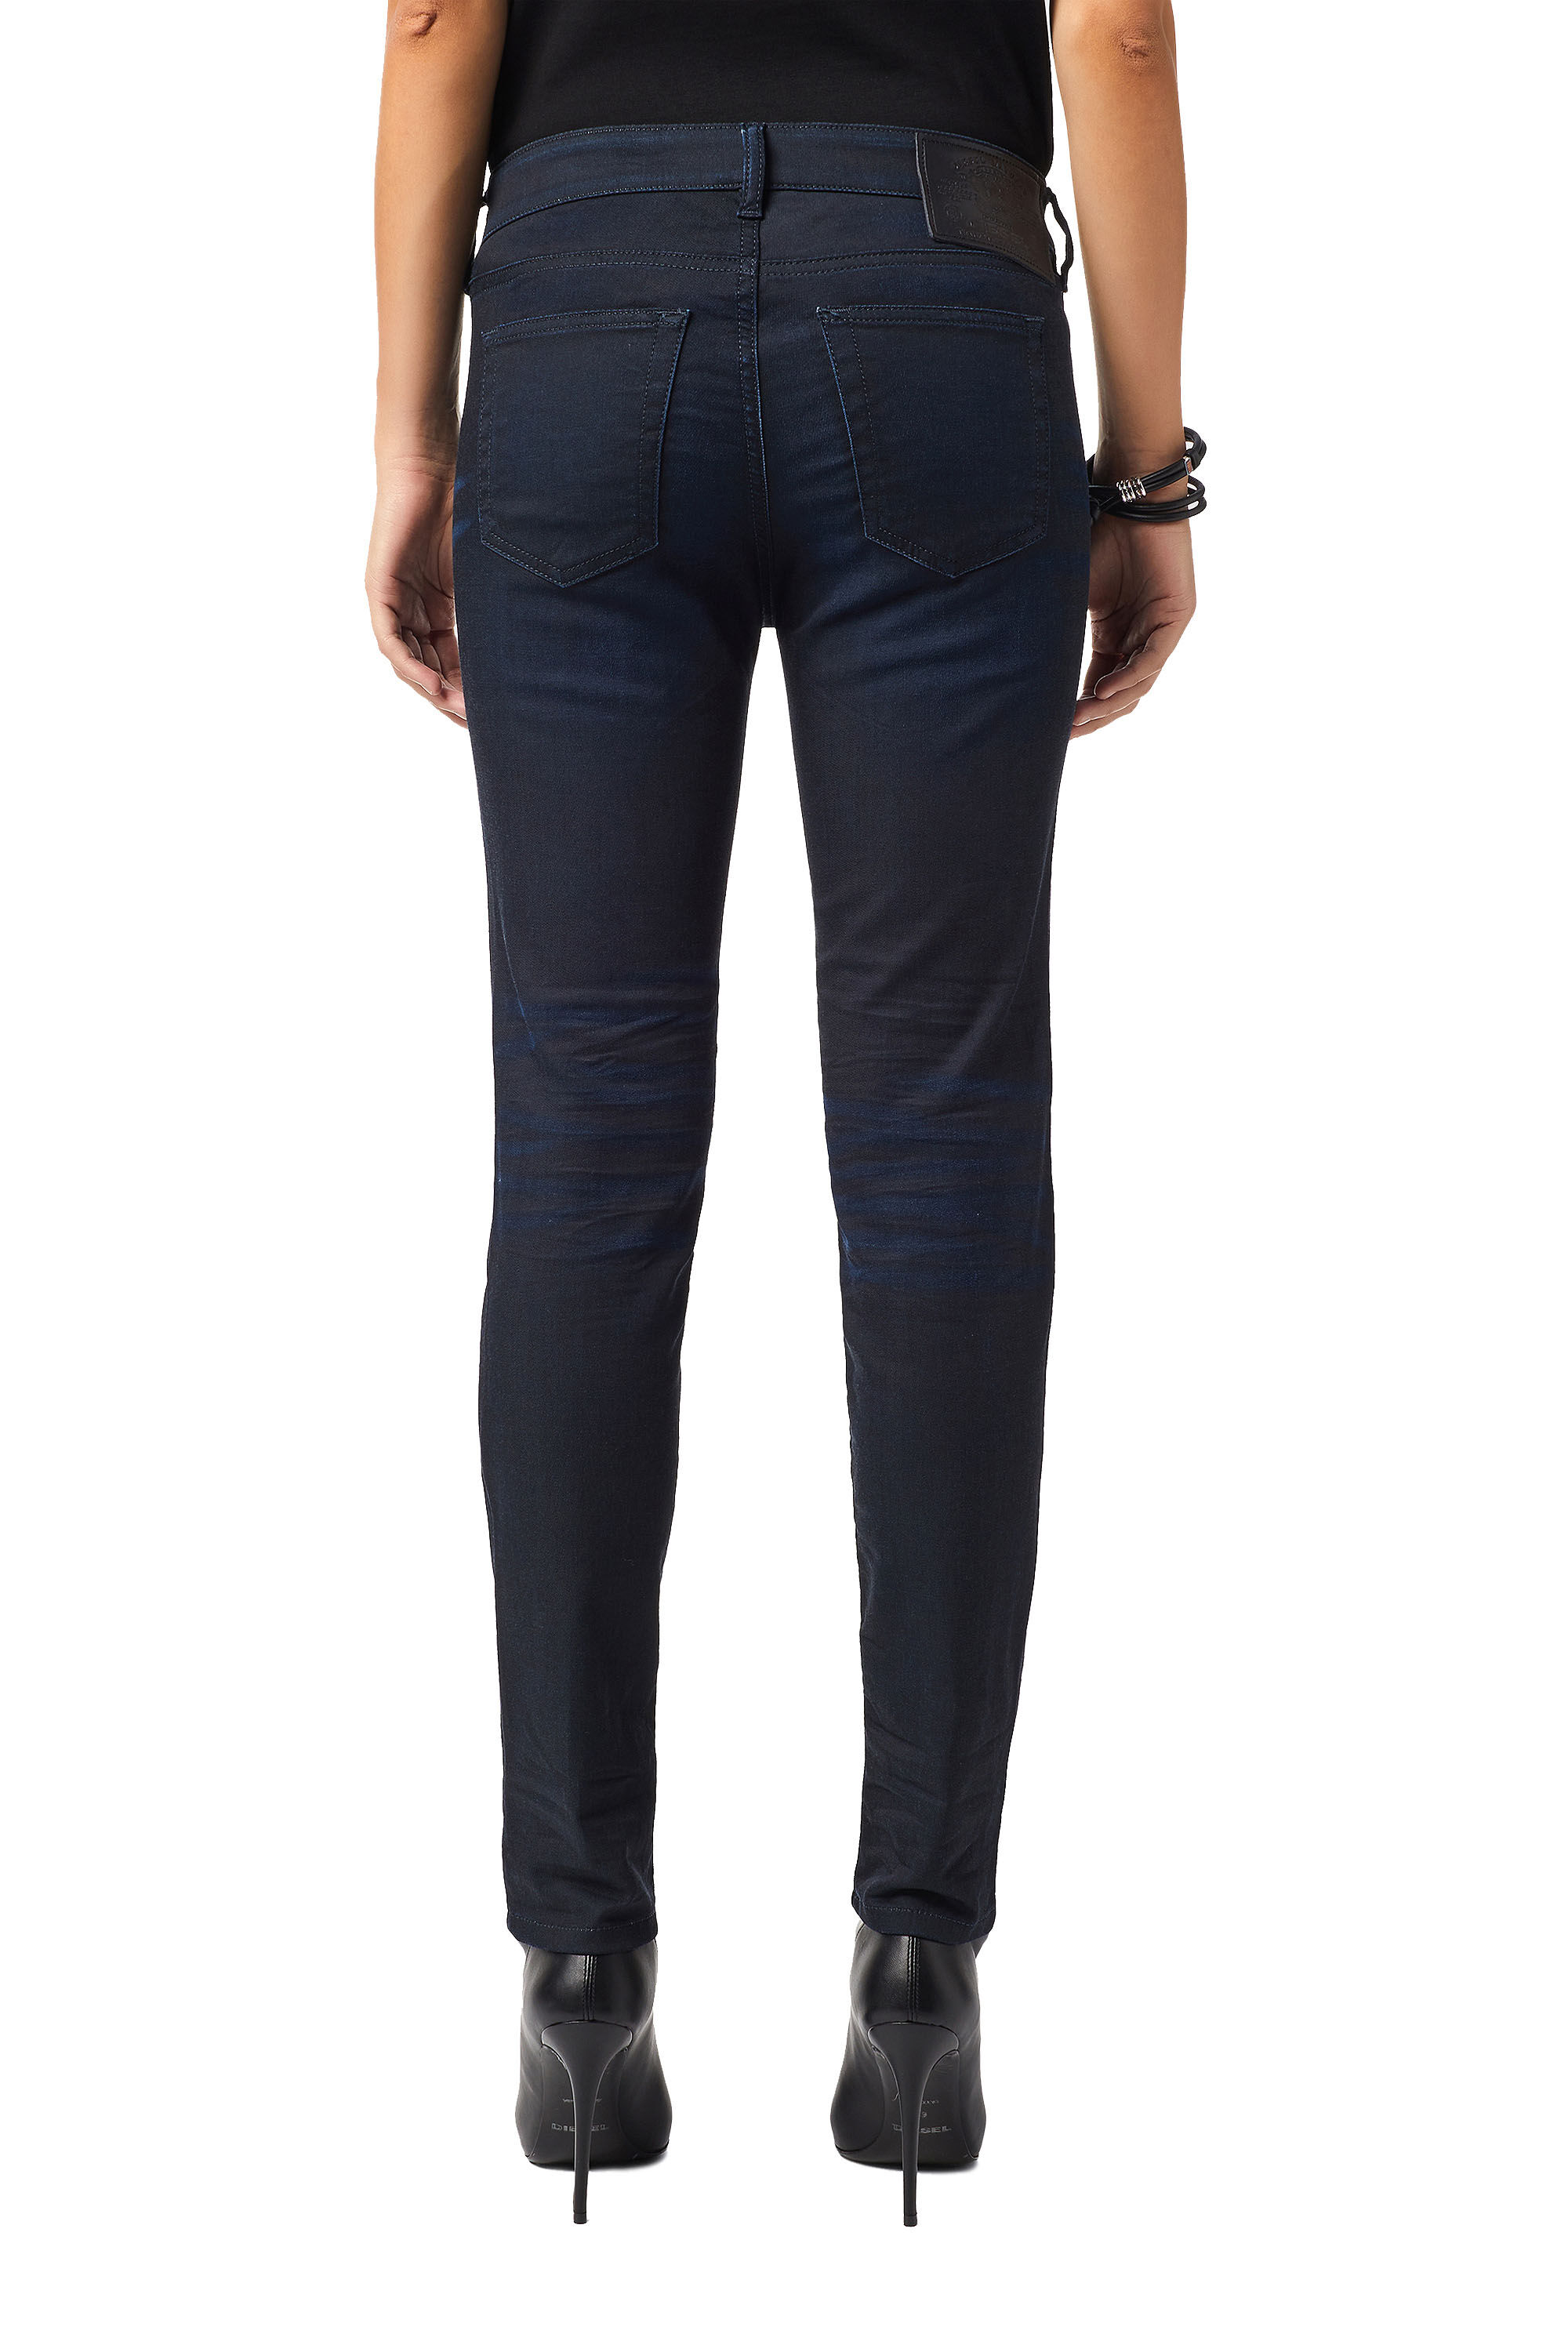 Diesel - D-Ollies Slim JoggJeans® 069XY, Dark Blue - Image 5